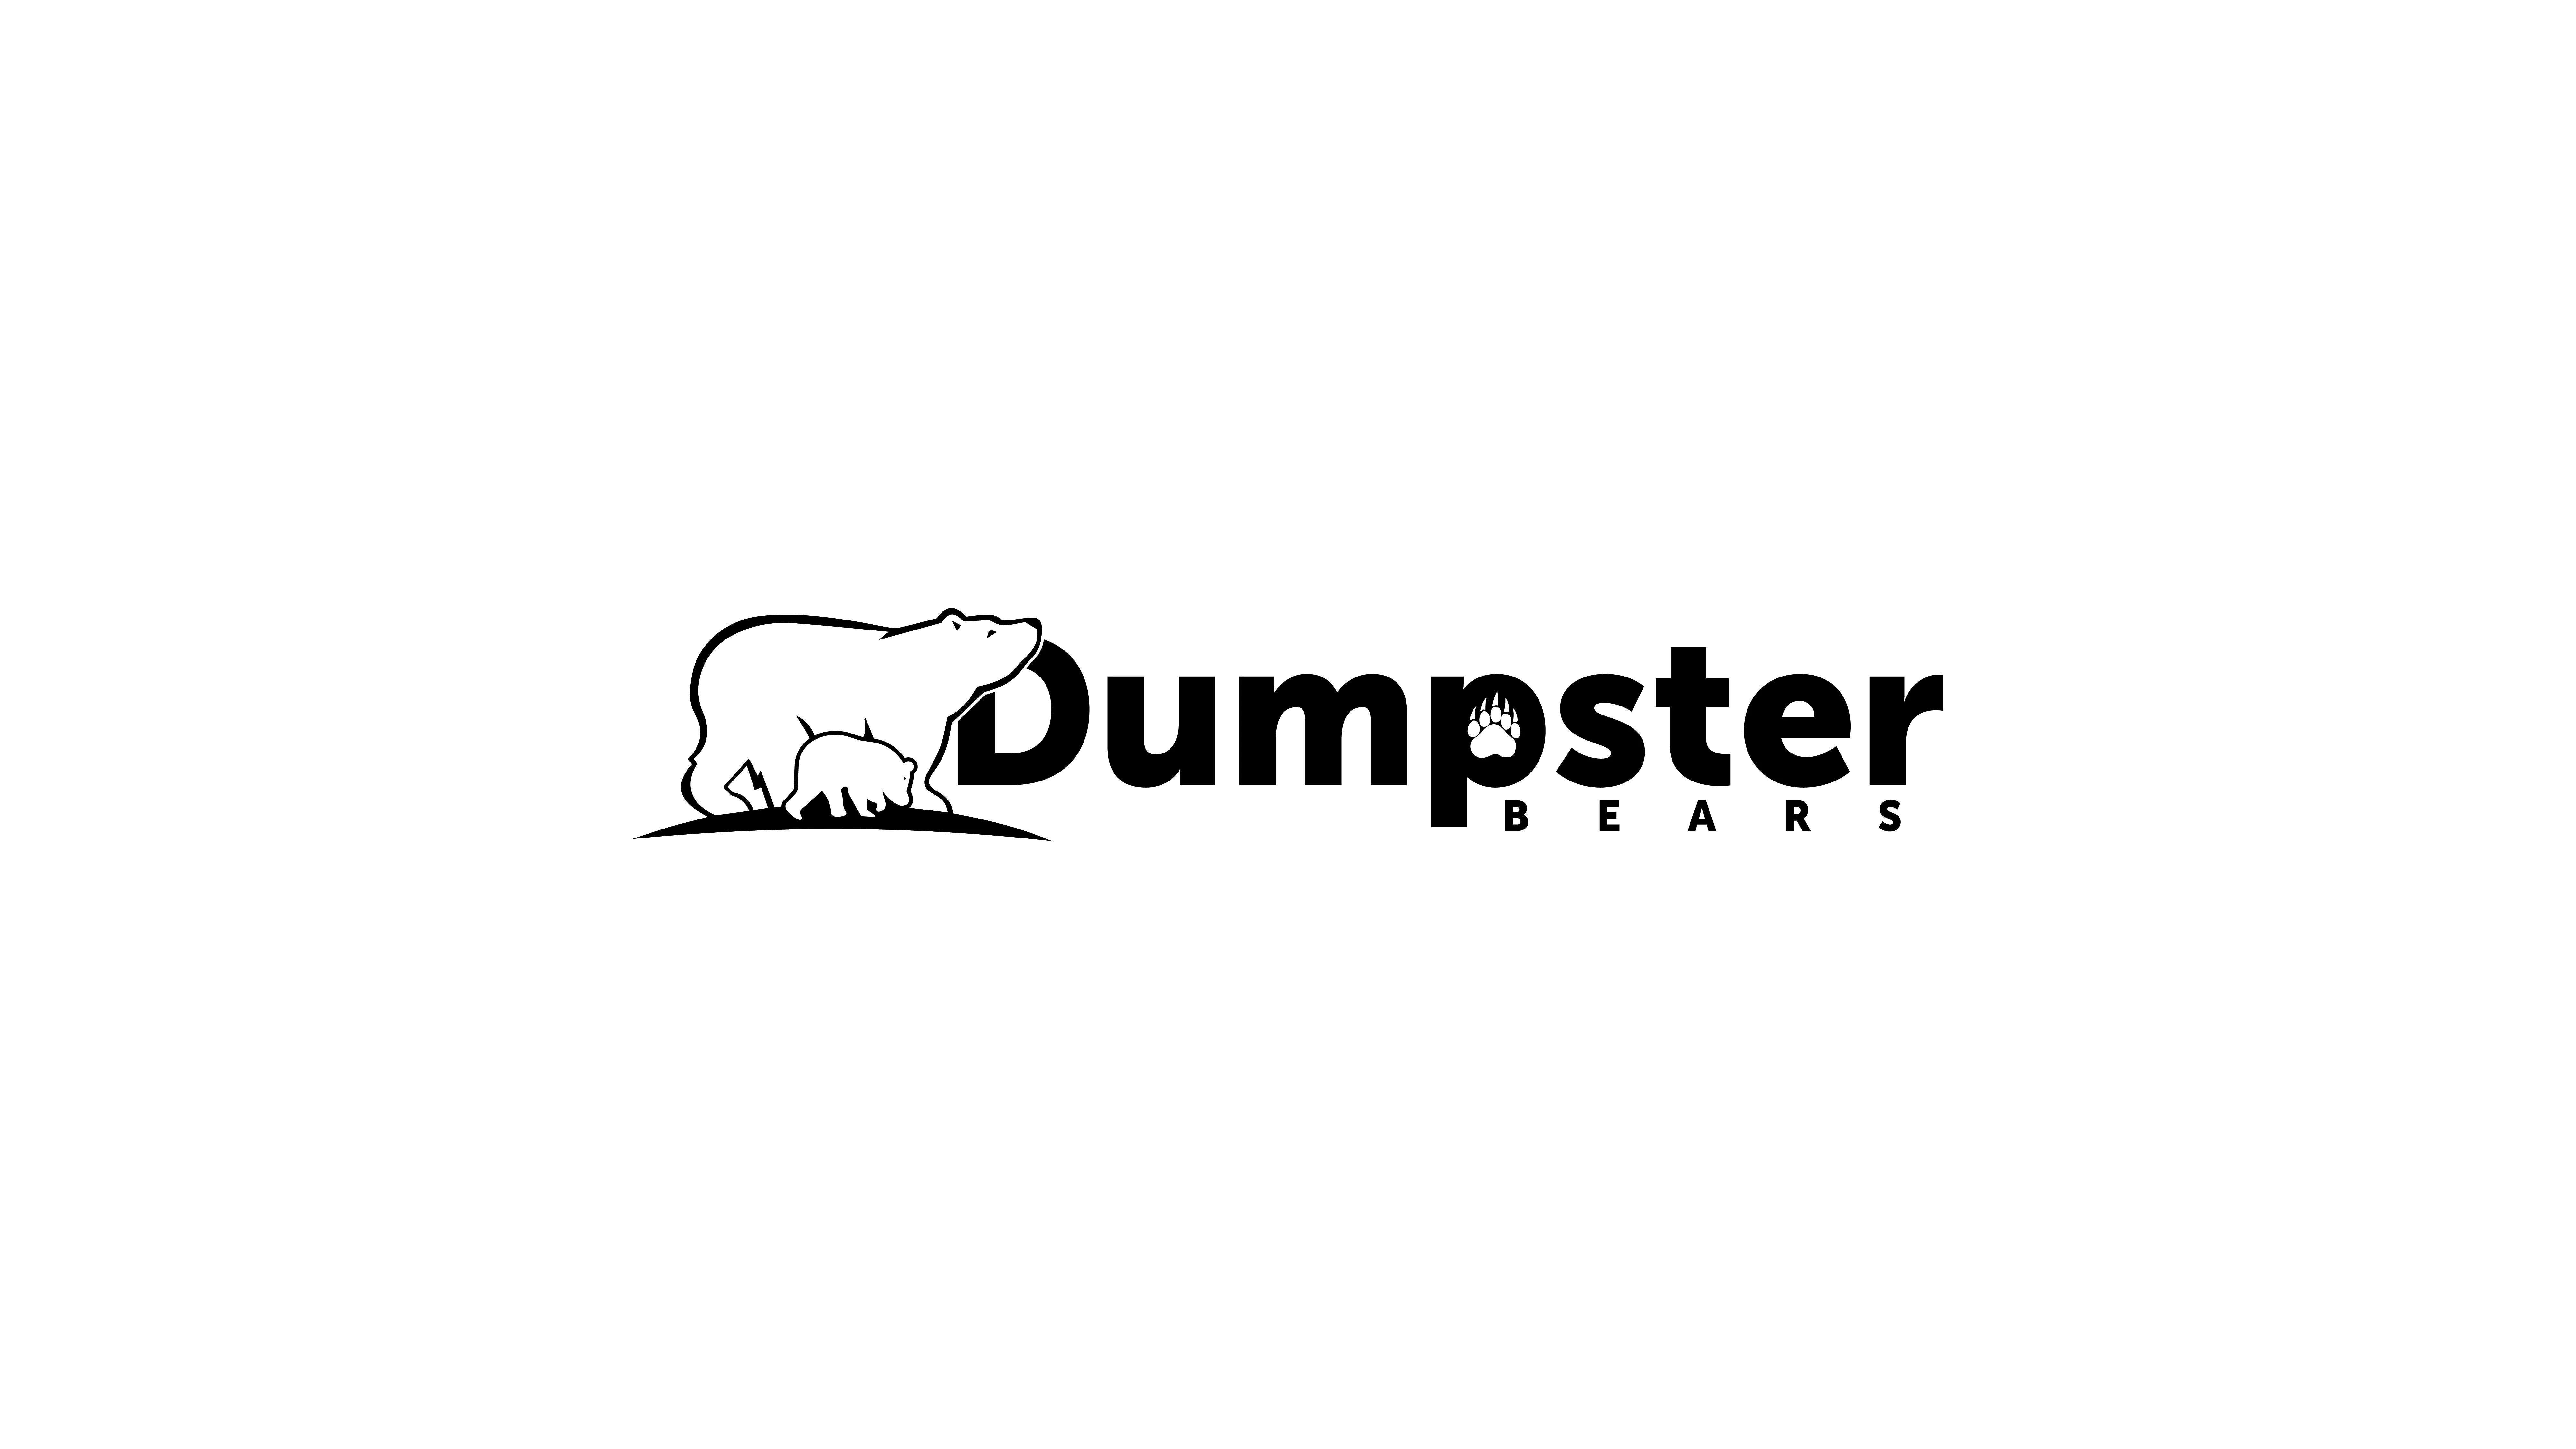 The Dumpster Bears 